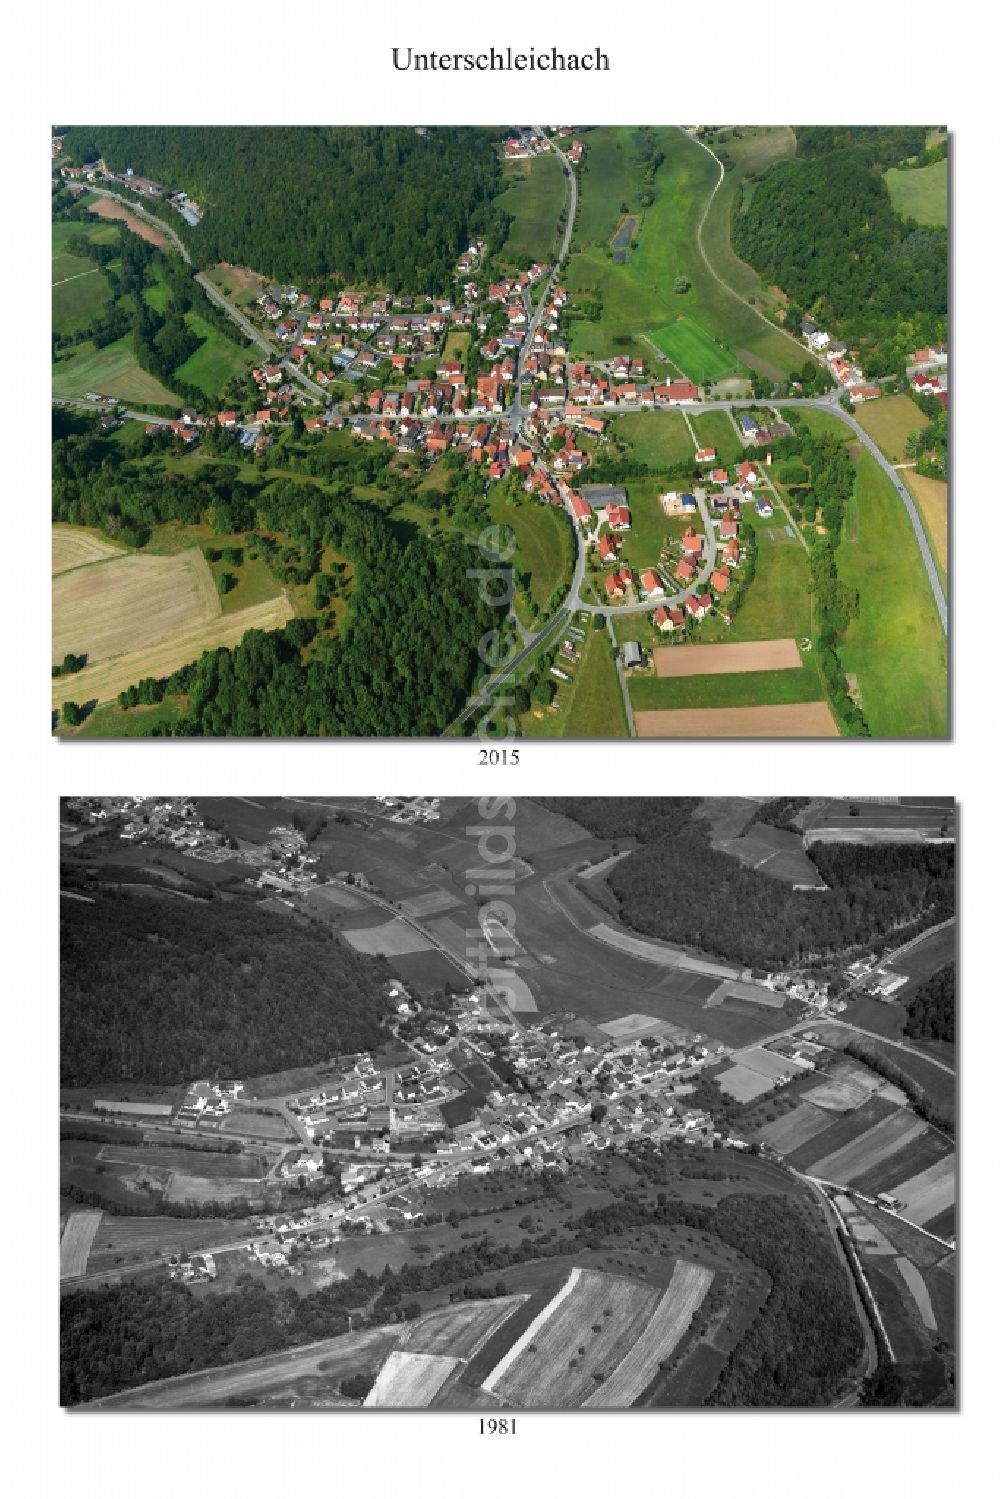 Luftaufnahme Unterschleichach - 1981 und 2015 Wandel der Dorf - Ansicht von Unterschleichach im Landkreis Haßberge im Bundesland Bayern